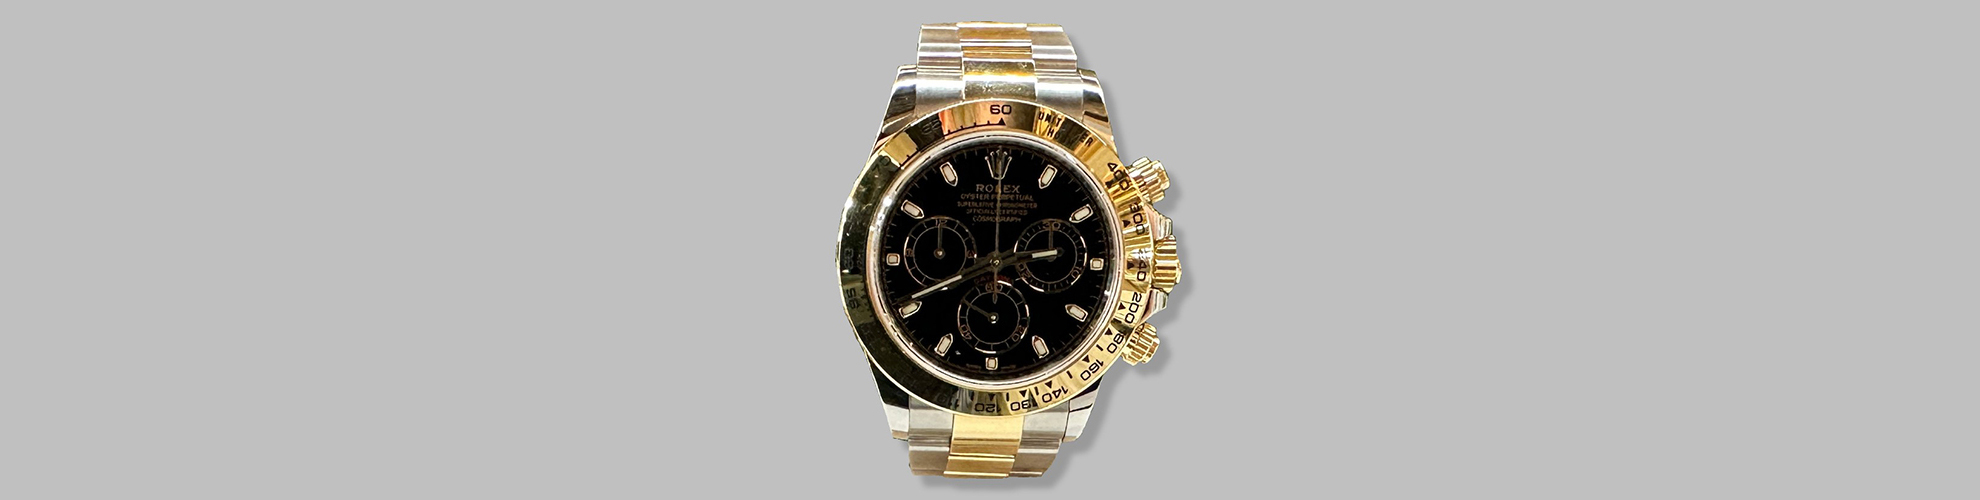 ne Rolex-Uhr mit schwarzem Zifferblatt und goldfarbenem Gehuse.